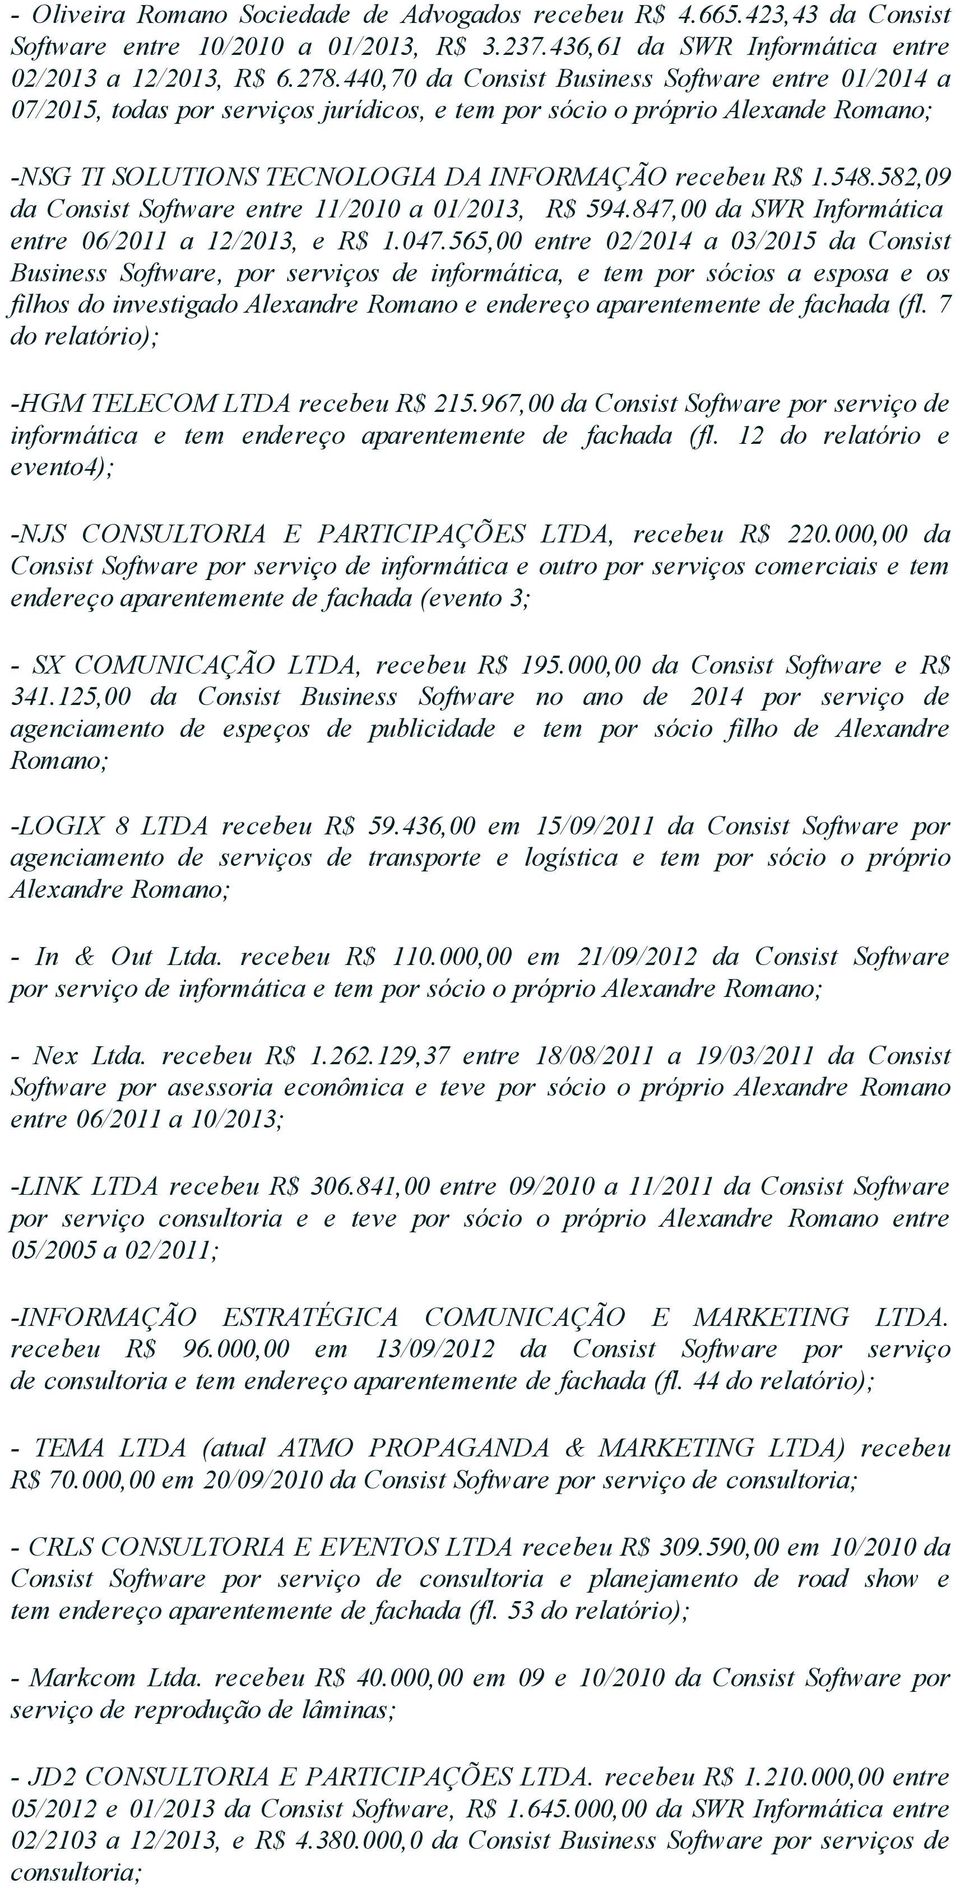 582,09 da Consist Software entre 11/2010 a 01/2013, R$ 594.847,00 da SWR Informática entre 06/2011 a 12/2013, e R$ 1.047.